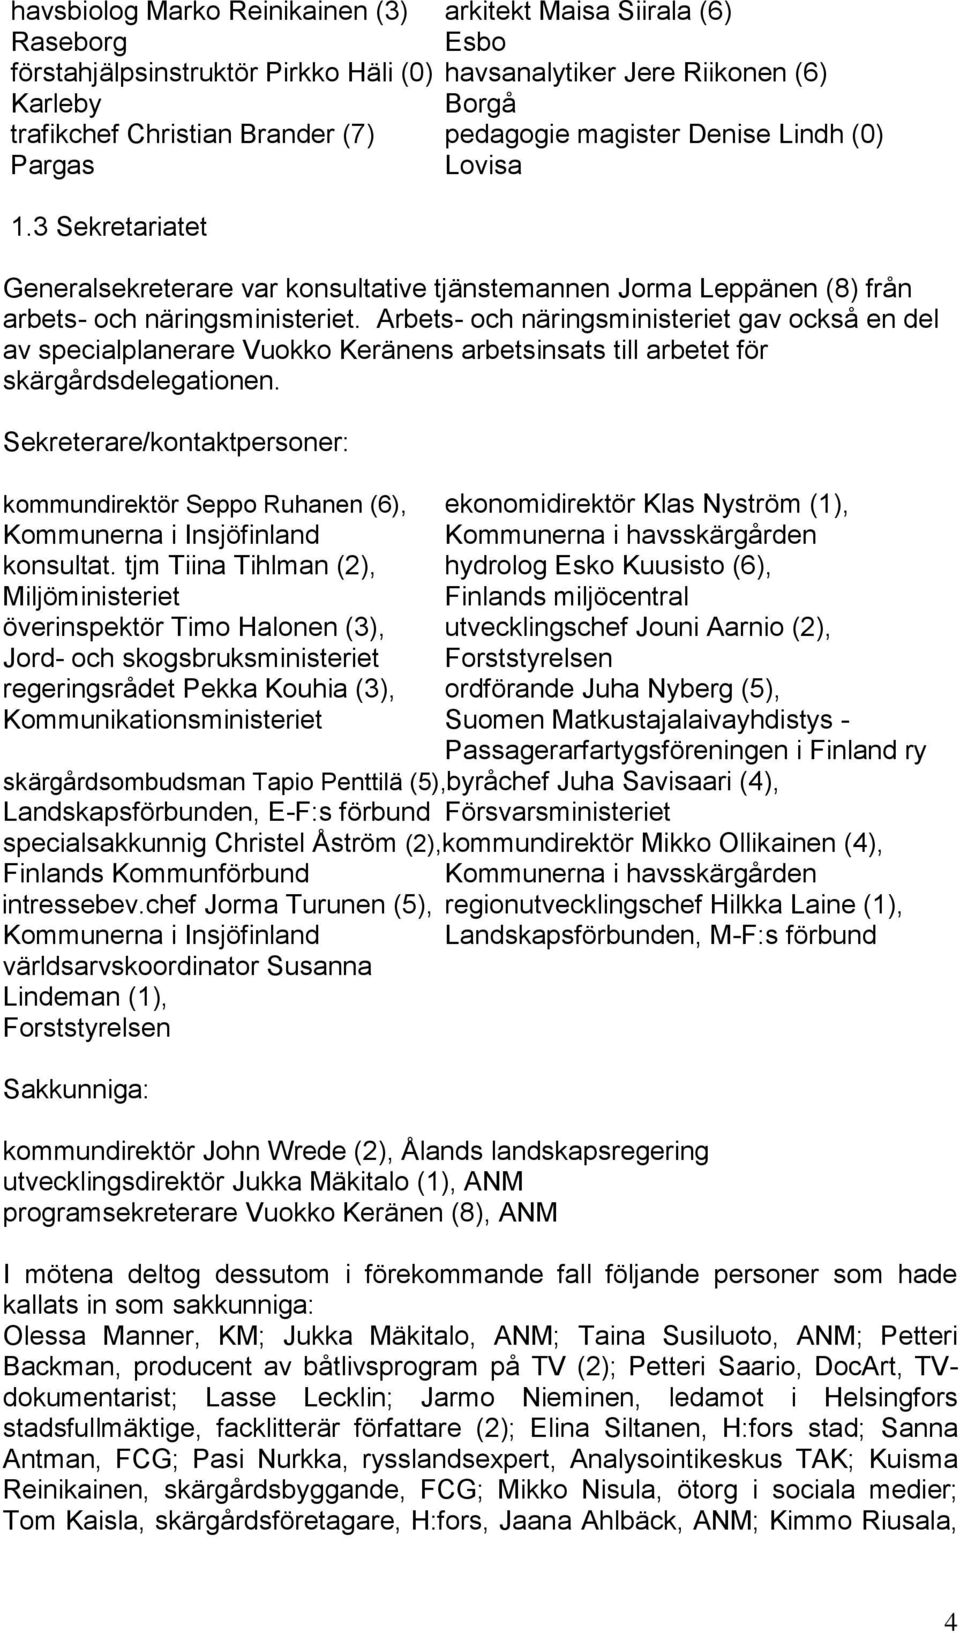 Arbets- och näringsministeriet gav också en del av specialplanerare Vuokko Keränens arbetsinsats till arbetet för skärgårdsdelegationen.